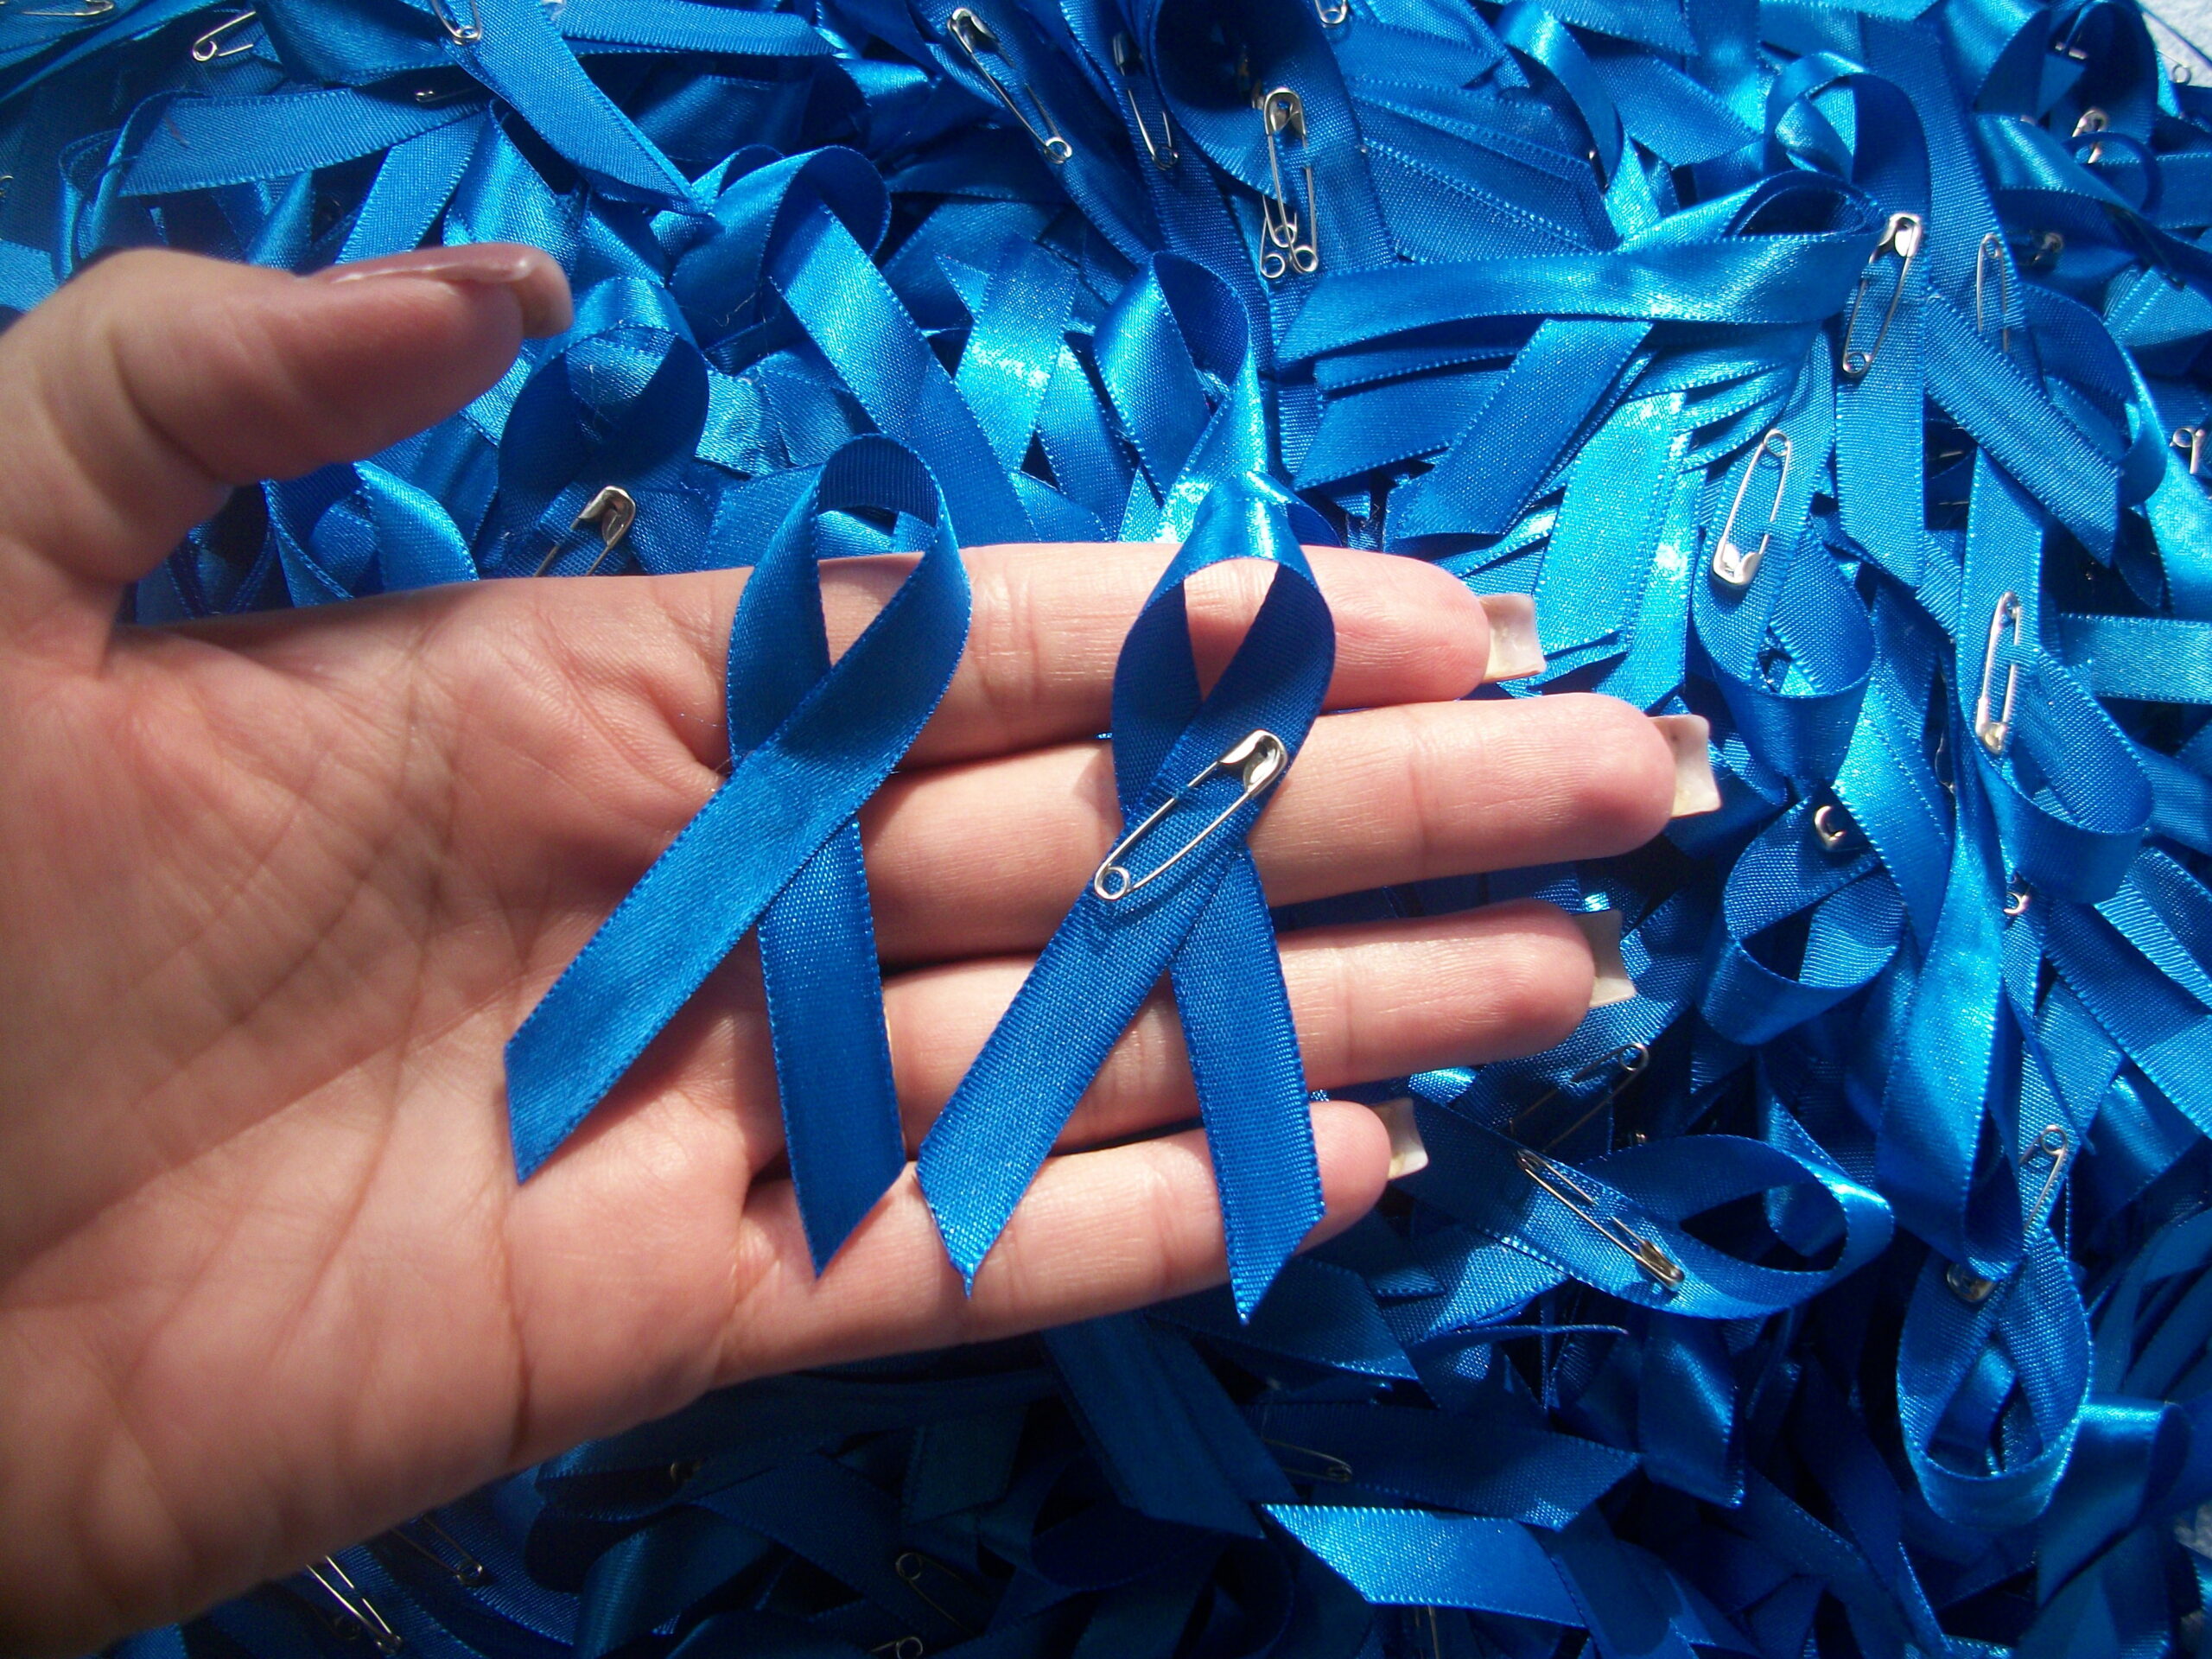 Novembro Azul: Antra dá destaque para causa de pessoas trans